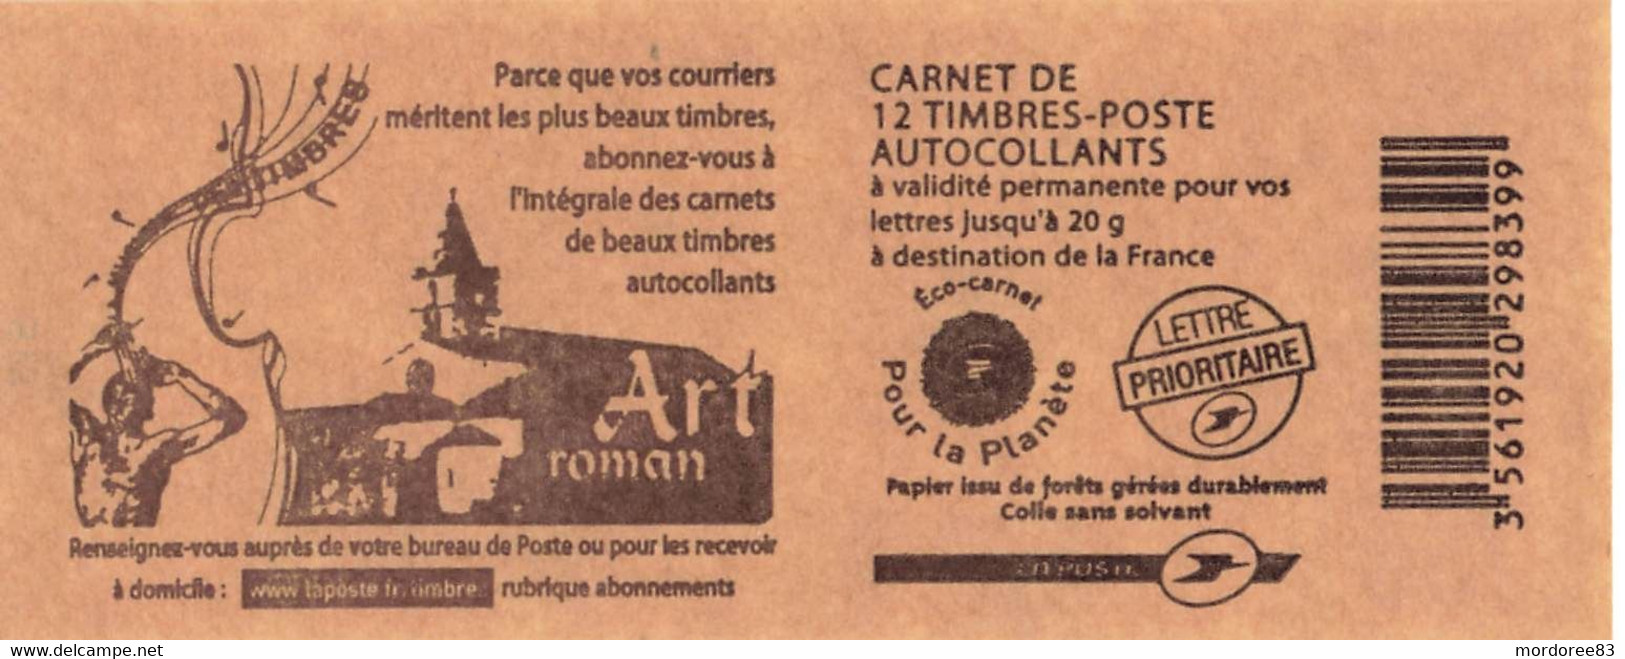 Prix D Un Carnet De 12 Timbres Non classés - CARNET 12 TIMBRES ADHESIFS MARIANNE DE BEAUJARD NEUF NON PLIE  / 4197-C18 / ABONNEMENT AUX CARNETS AUTOCOLLANTS